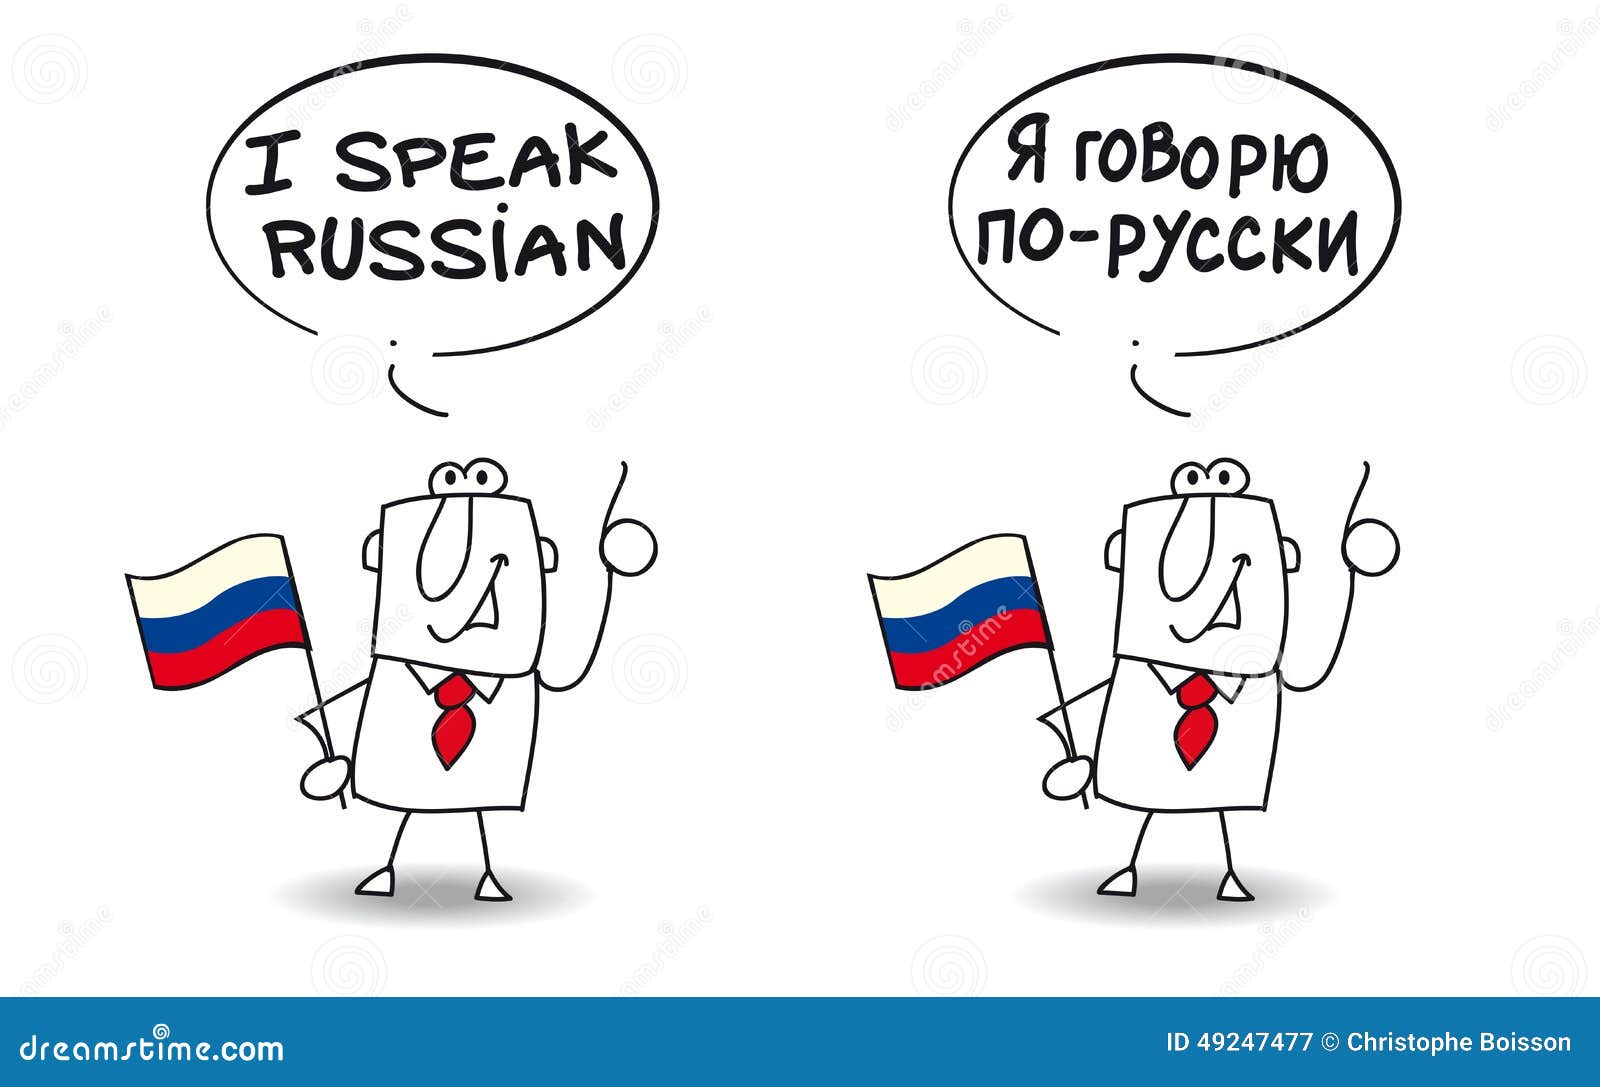 To Speak English Using Russian 77